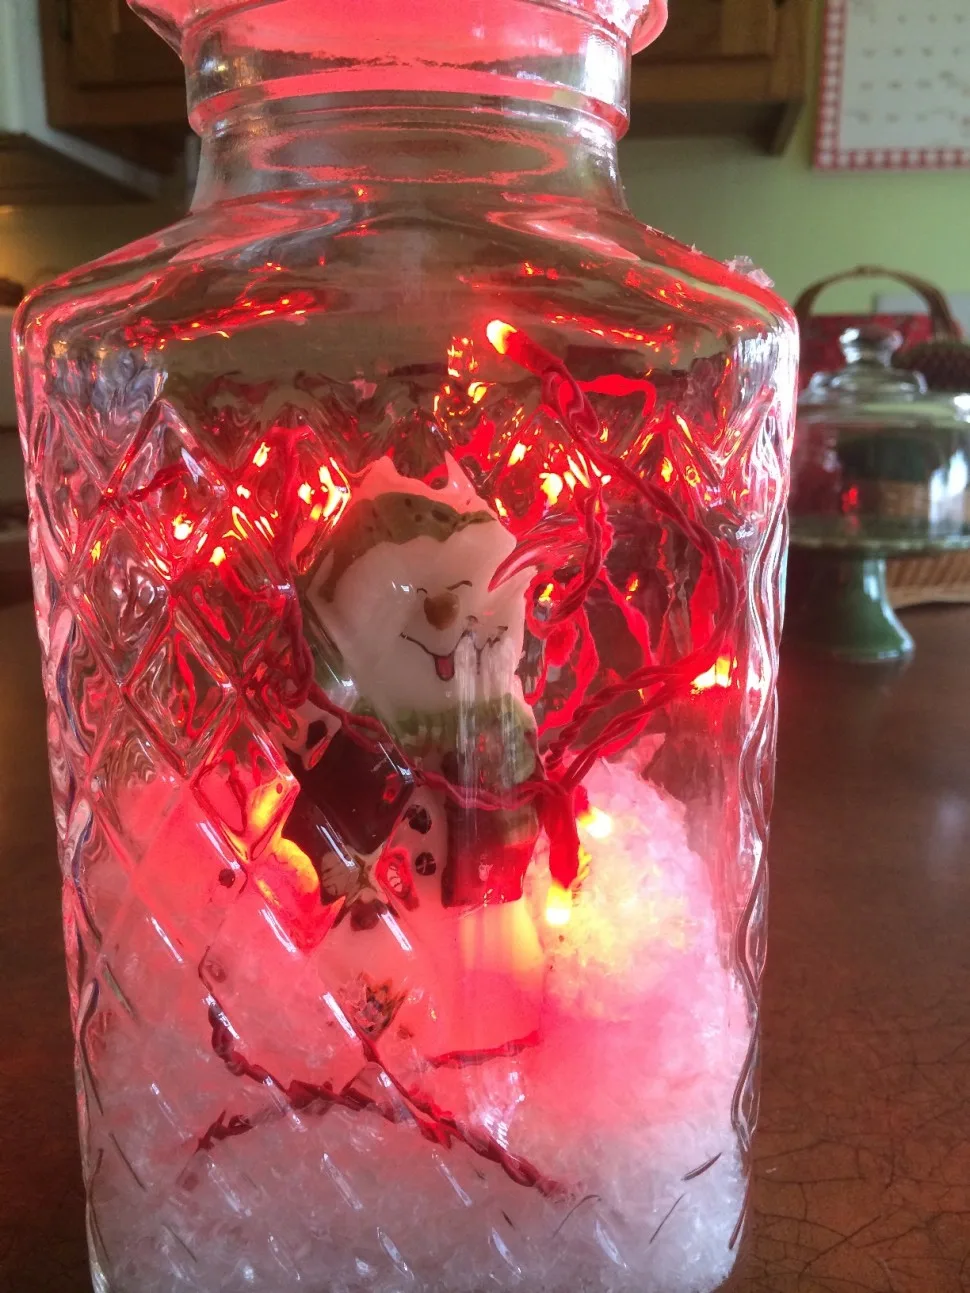 Building a Winter Wonderland in a Jar